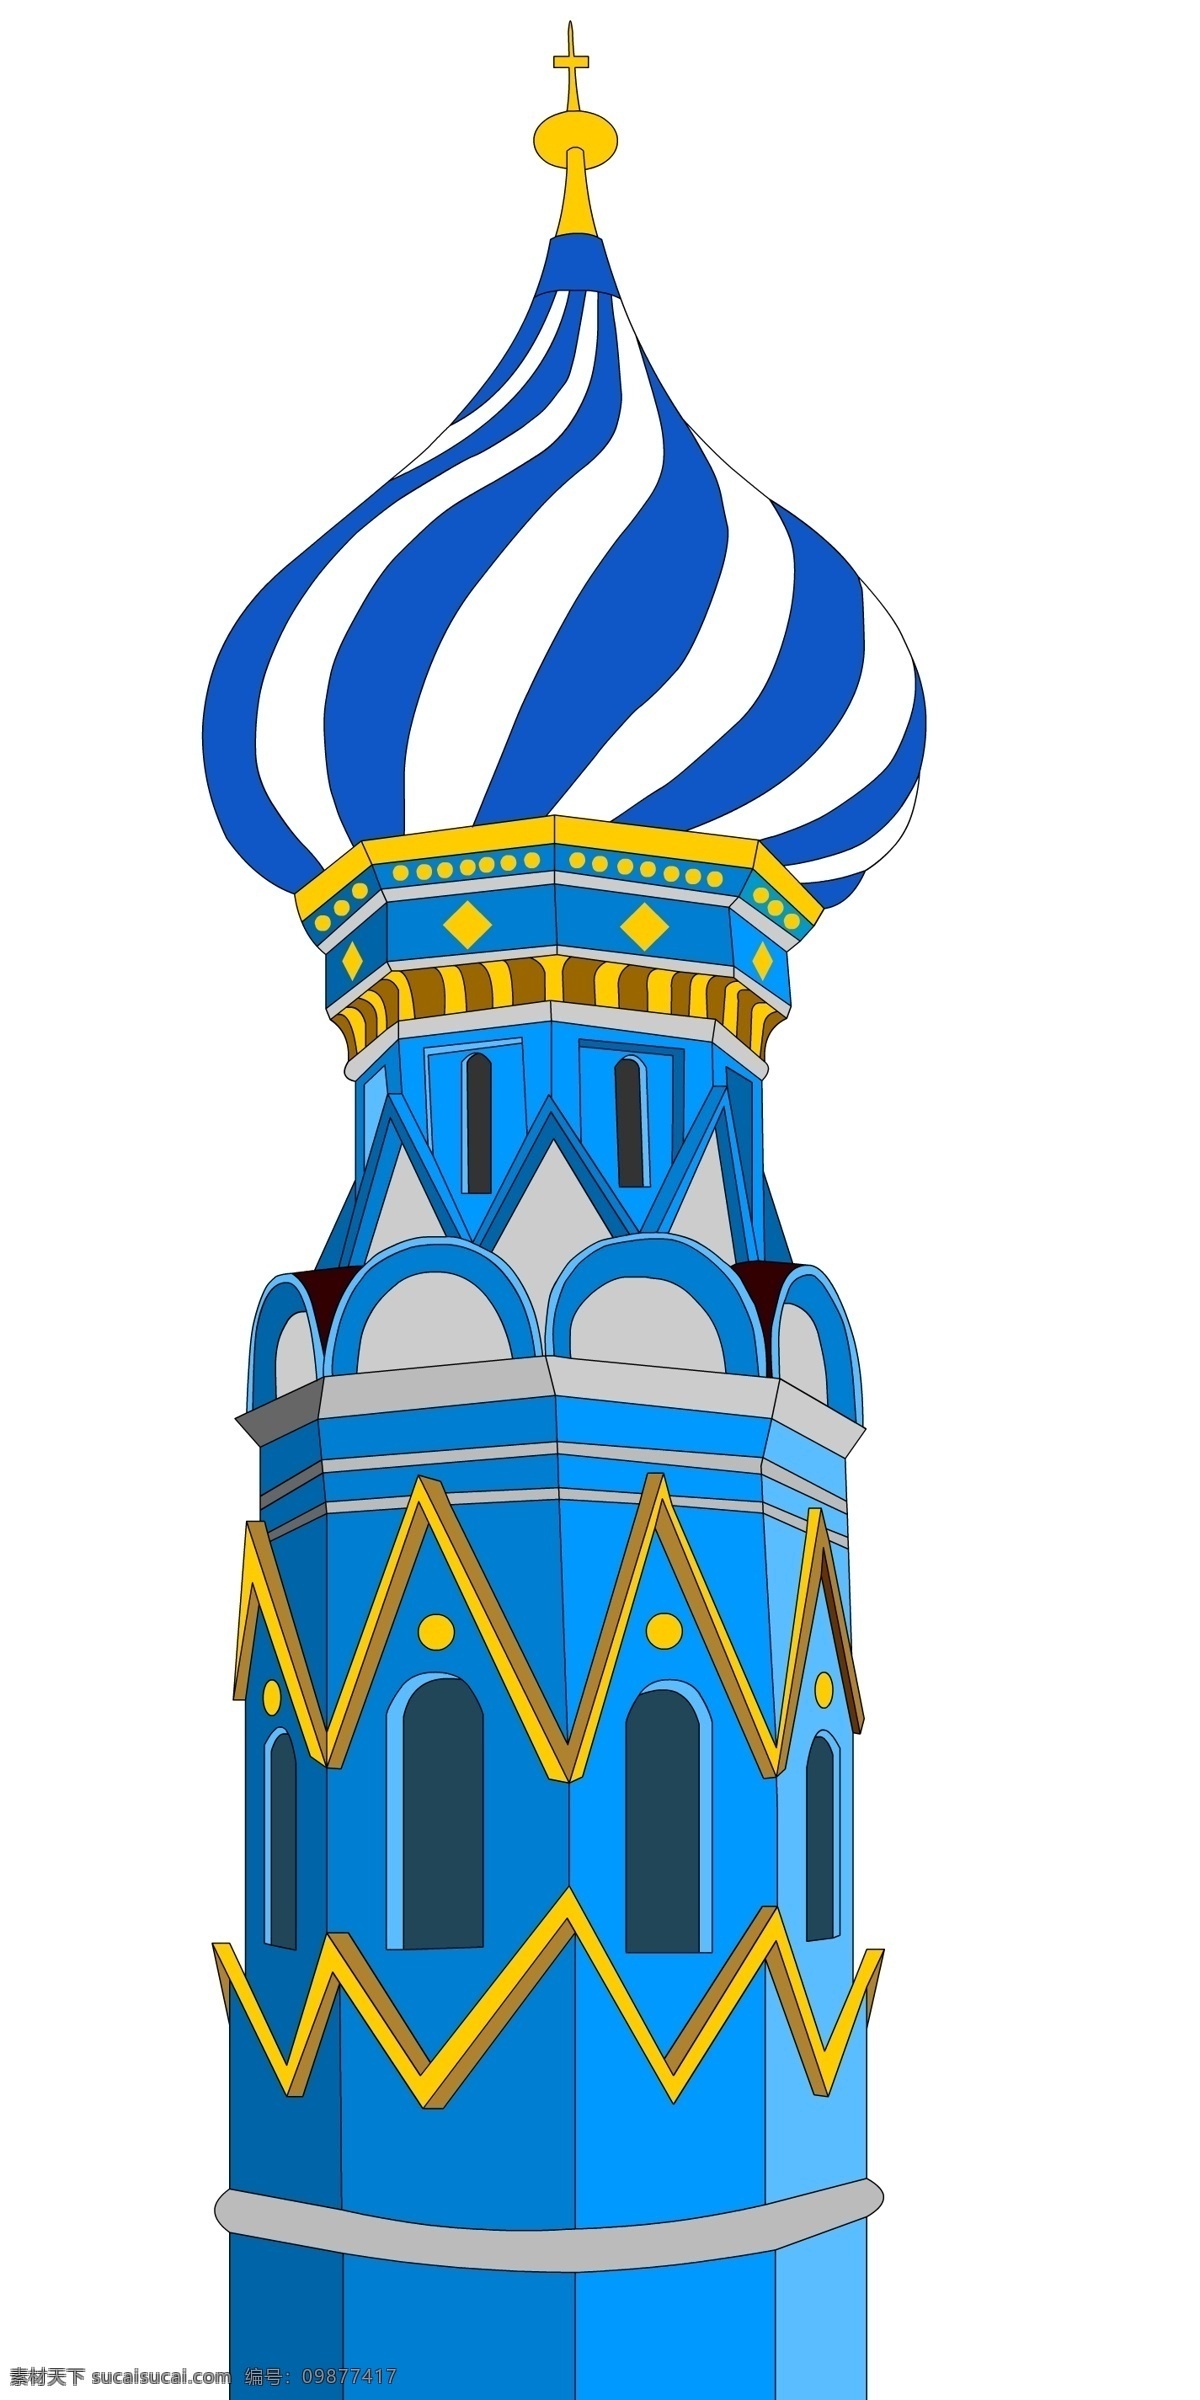 原创 俄罗斯 风格 卡通 城堡 建筑 俄罗斯风格 欧洲建筑 卡通设计 动漫动画 风景漫画